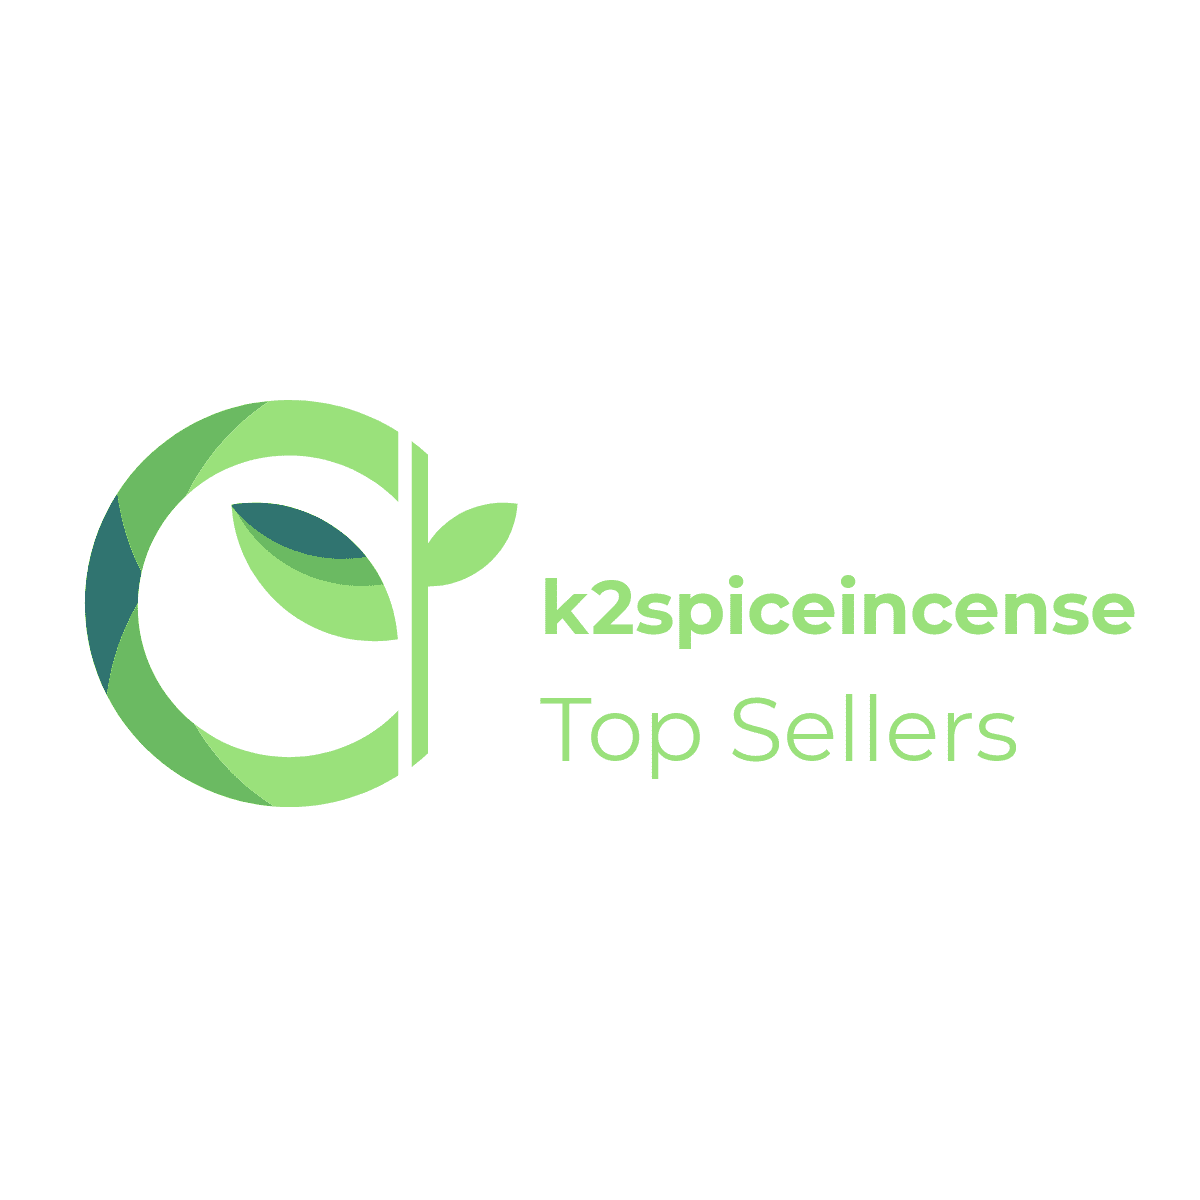 K2spiceincense